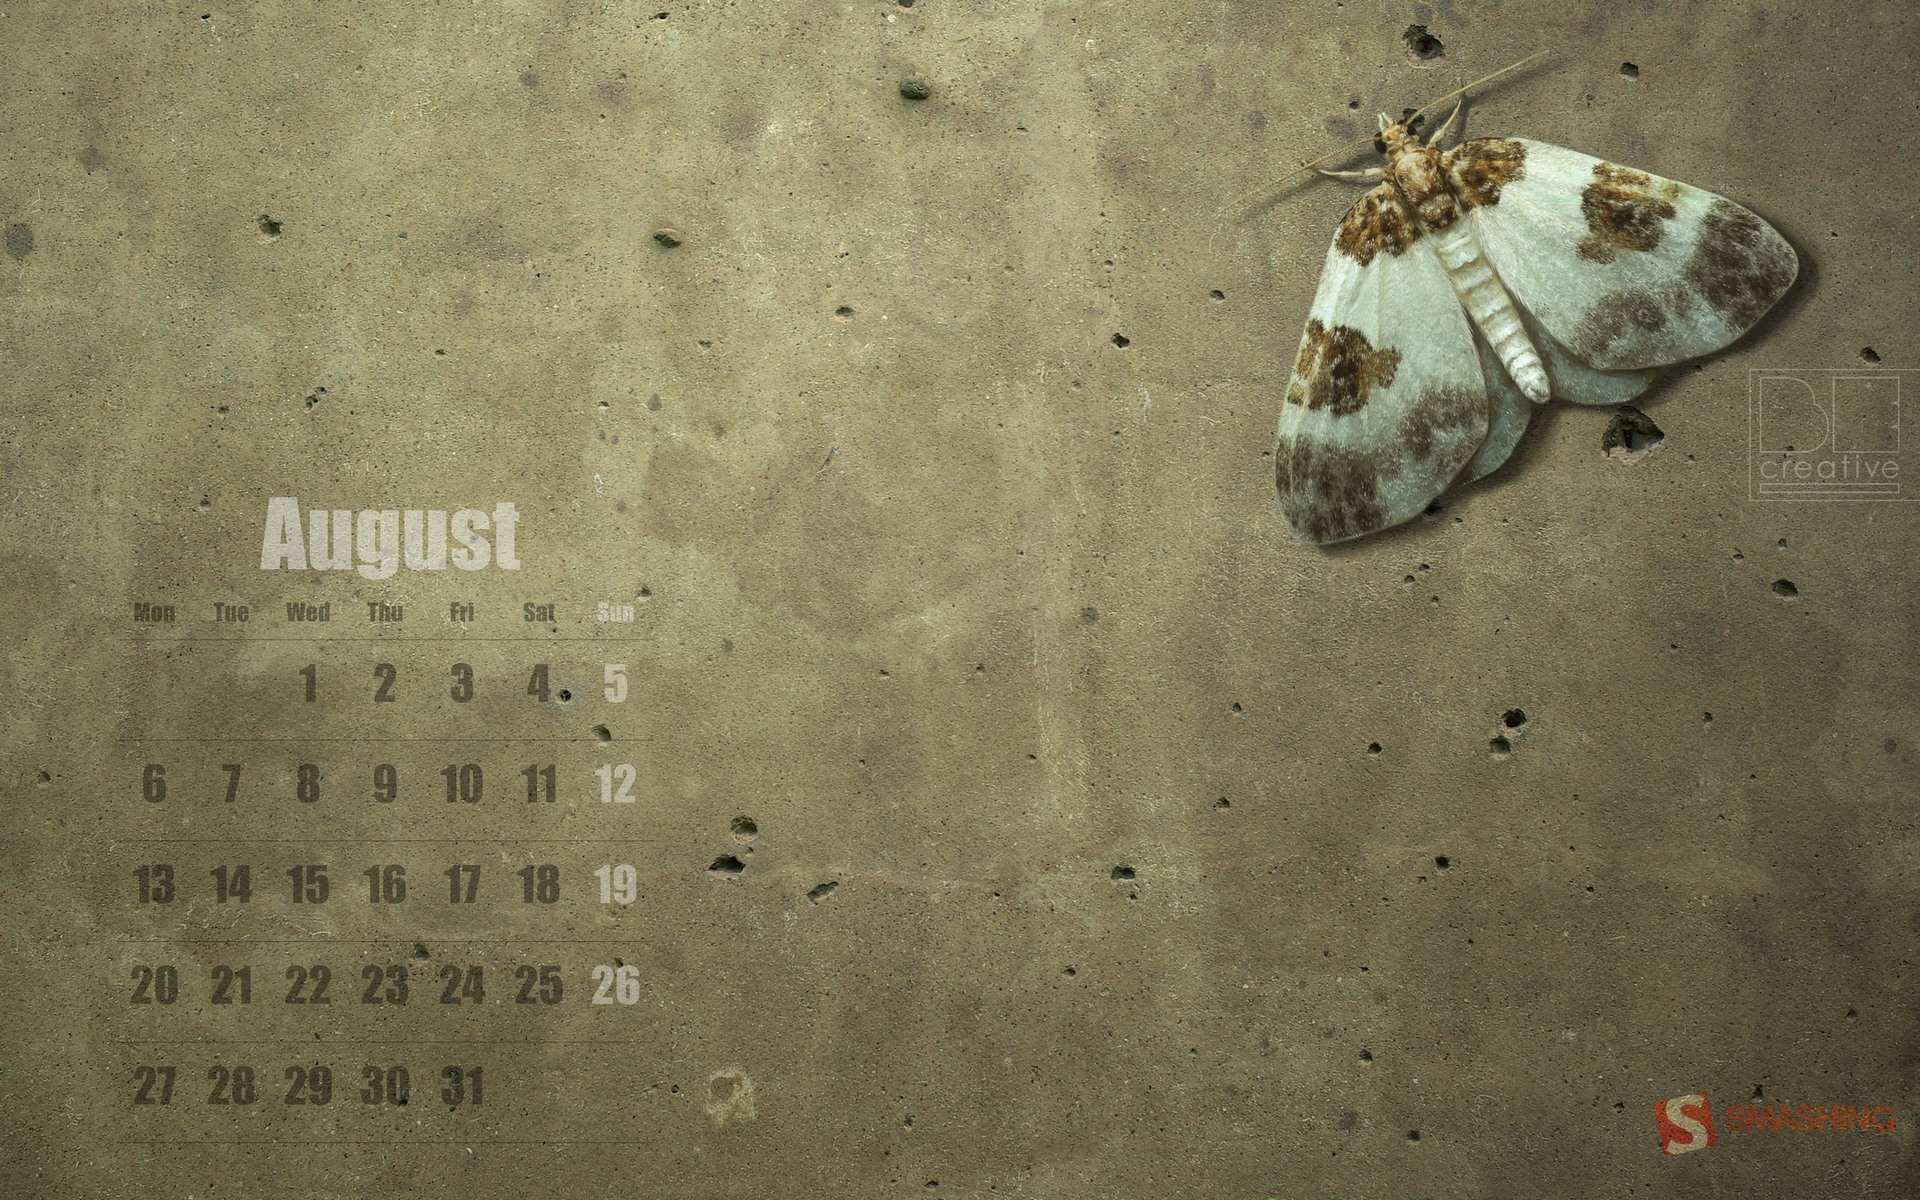 August 2012 Calendar wallpapers (1) #19 - 1920x1200